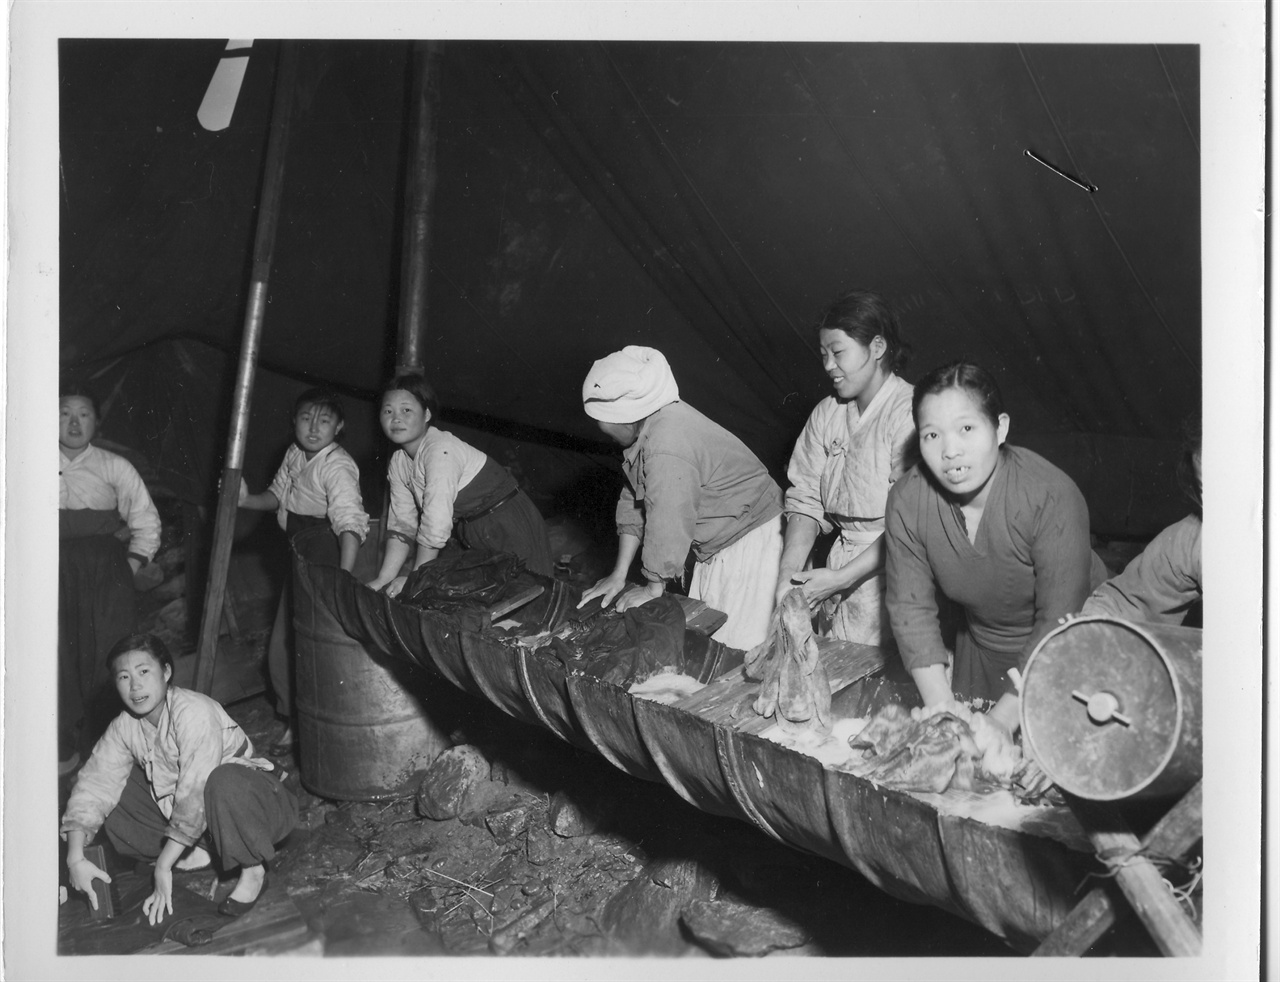  1954. 3. 3. 한국 여인들이 미군부대 근처 천막에서 군인들의 세탁물을 손으로 빨고 있다. 